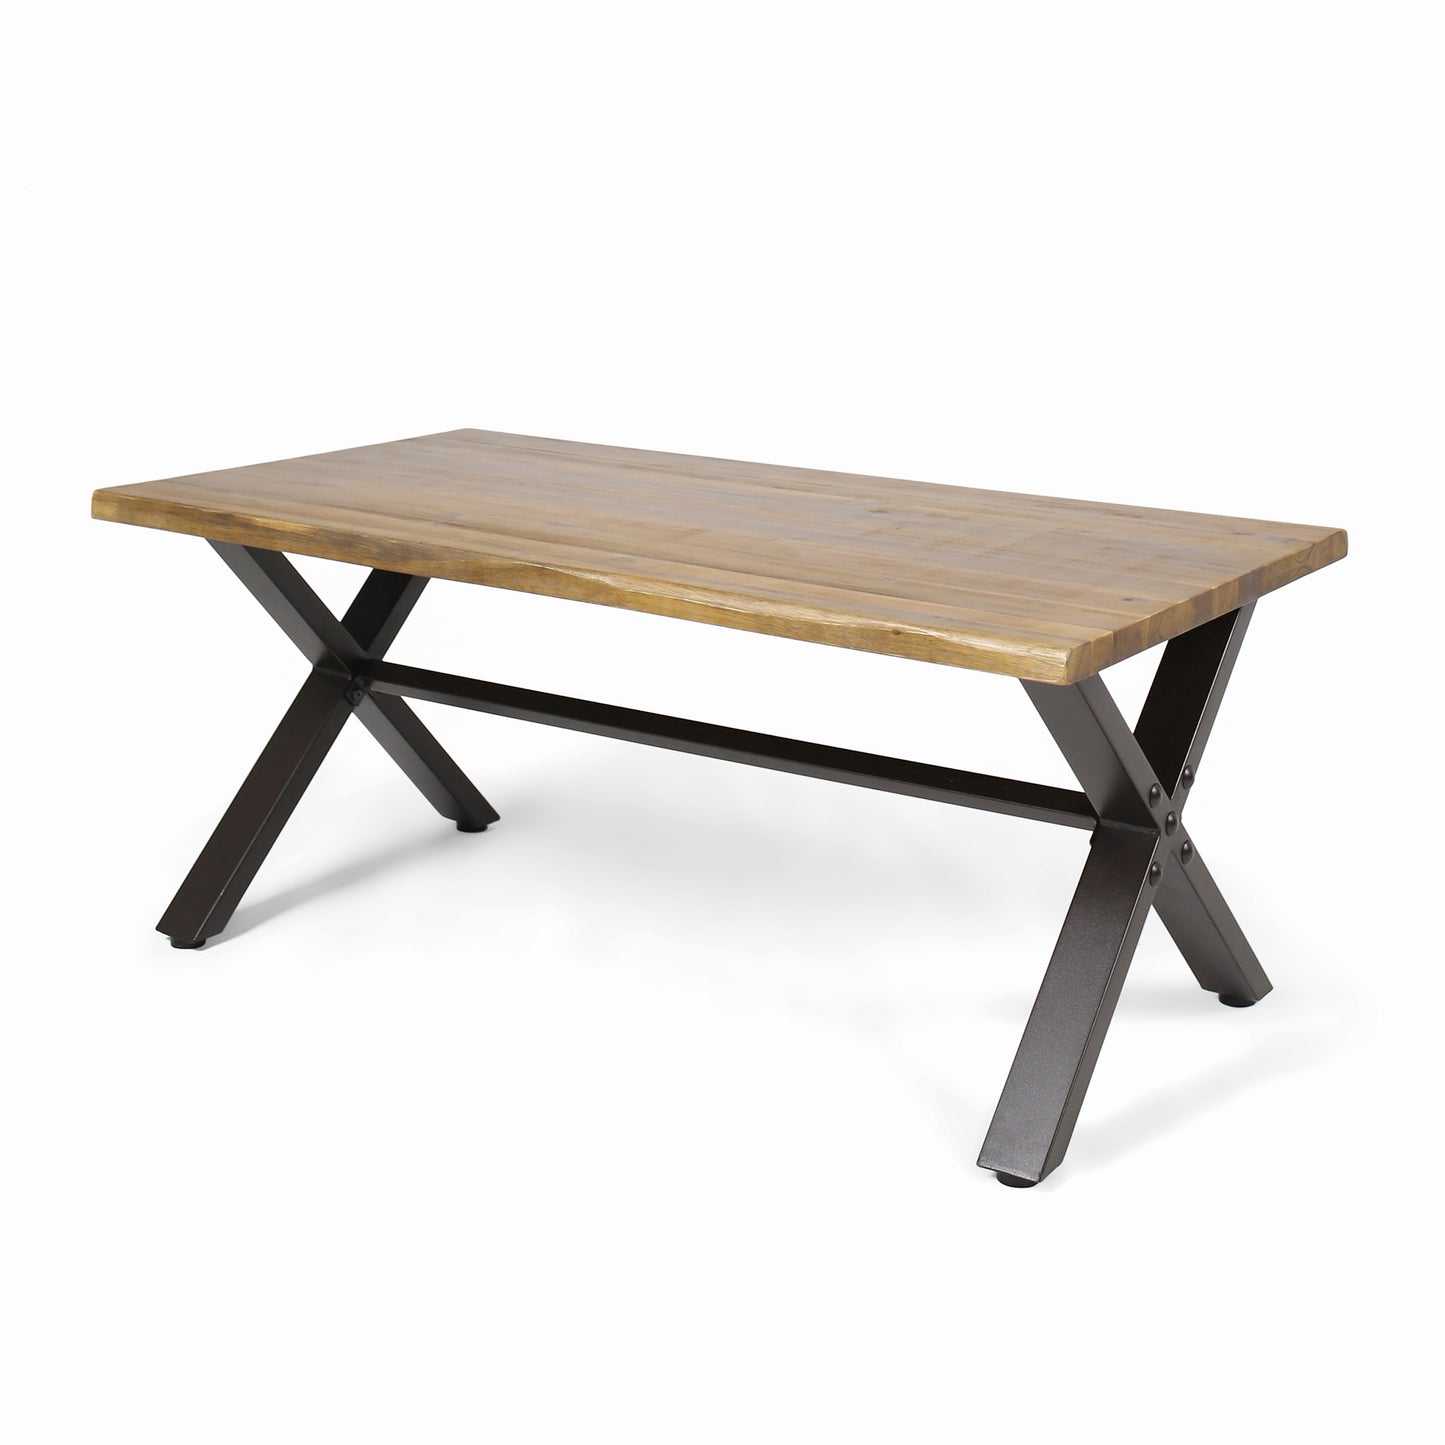 Ishtar Outdoor Farmhouse Teak Acacia Wood Coffee Table with Black X-Frame Legs